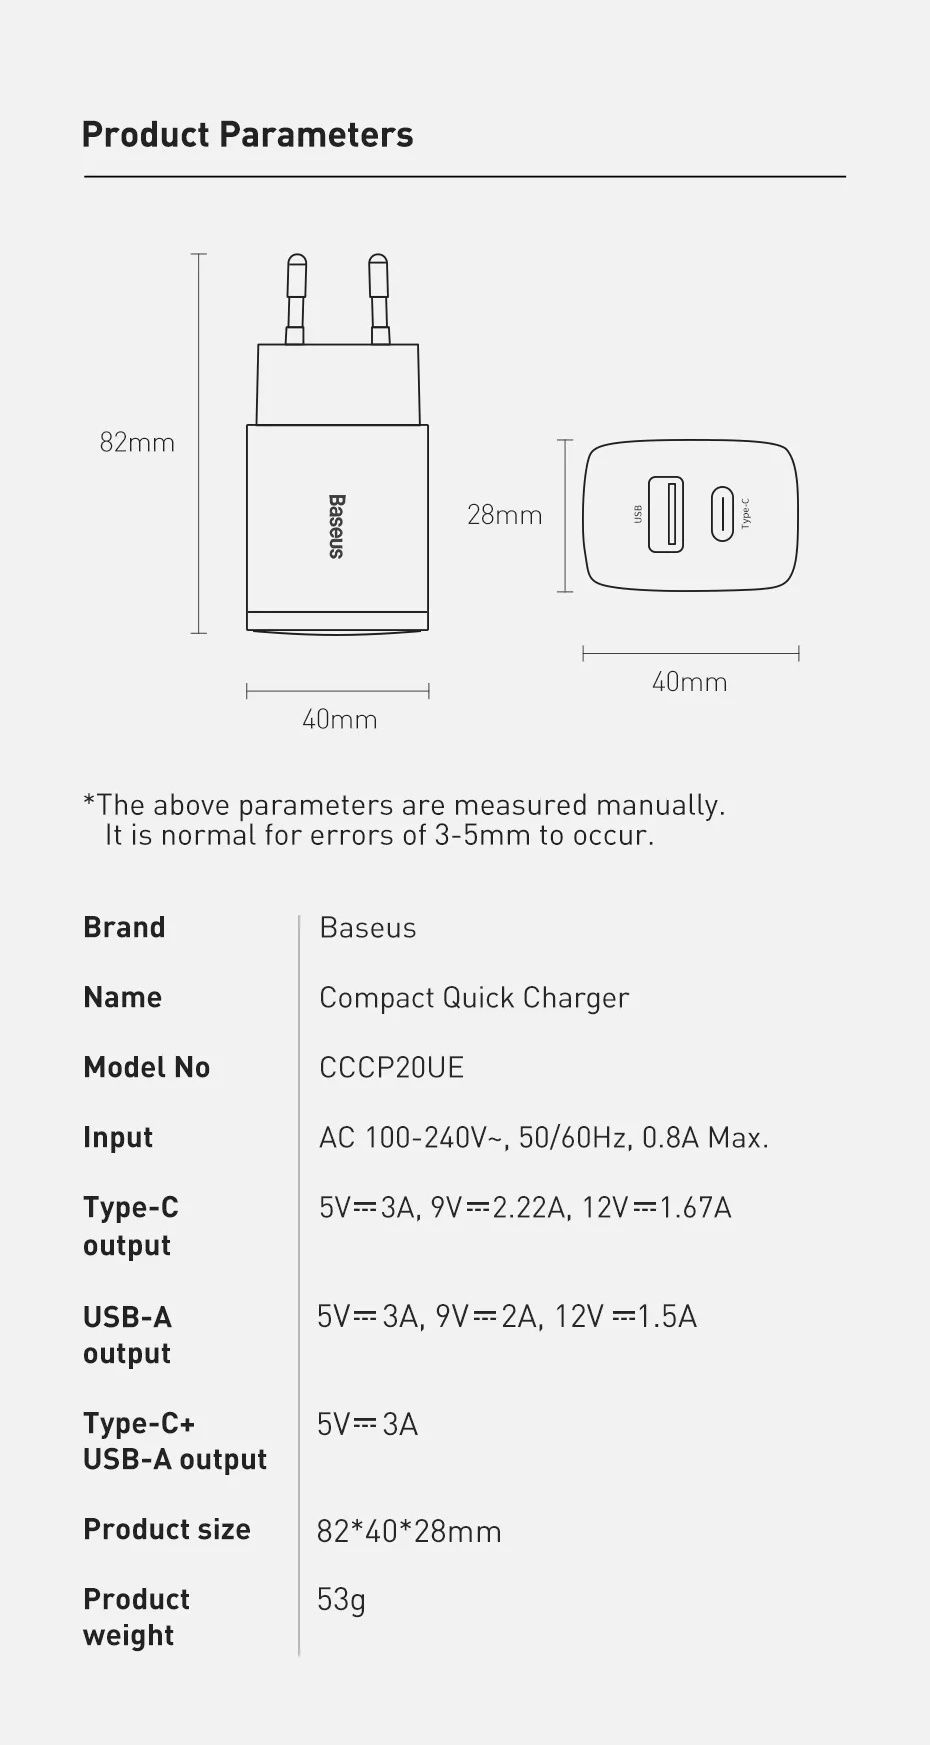 Carregador Quick Charger USB + Type C 20W -Preto-
-Baseus-
Novo - 24h